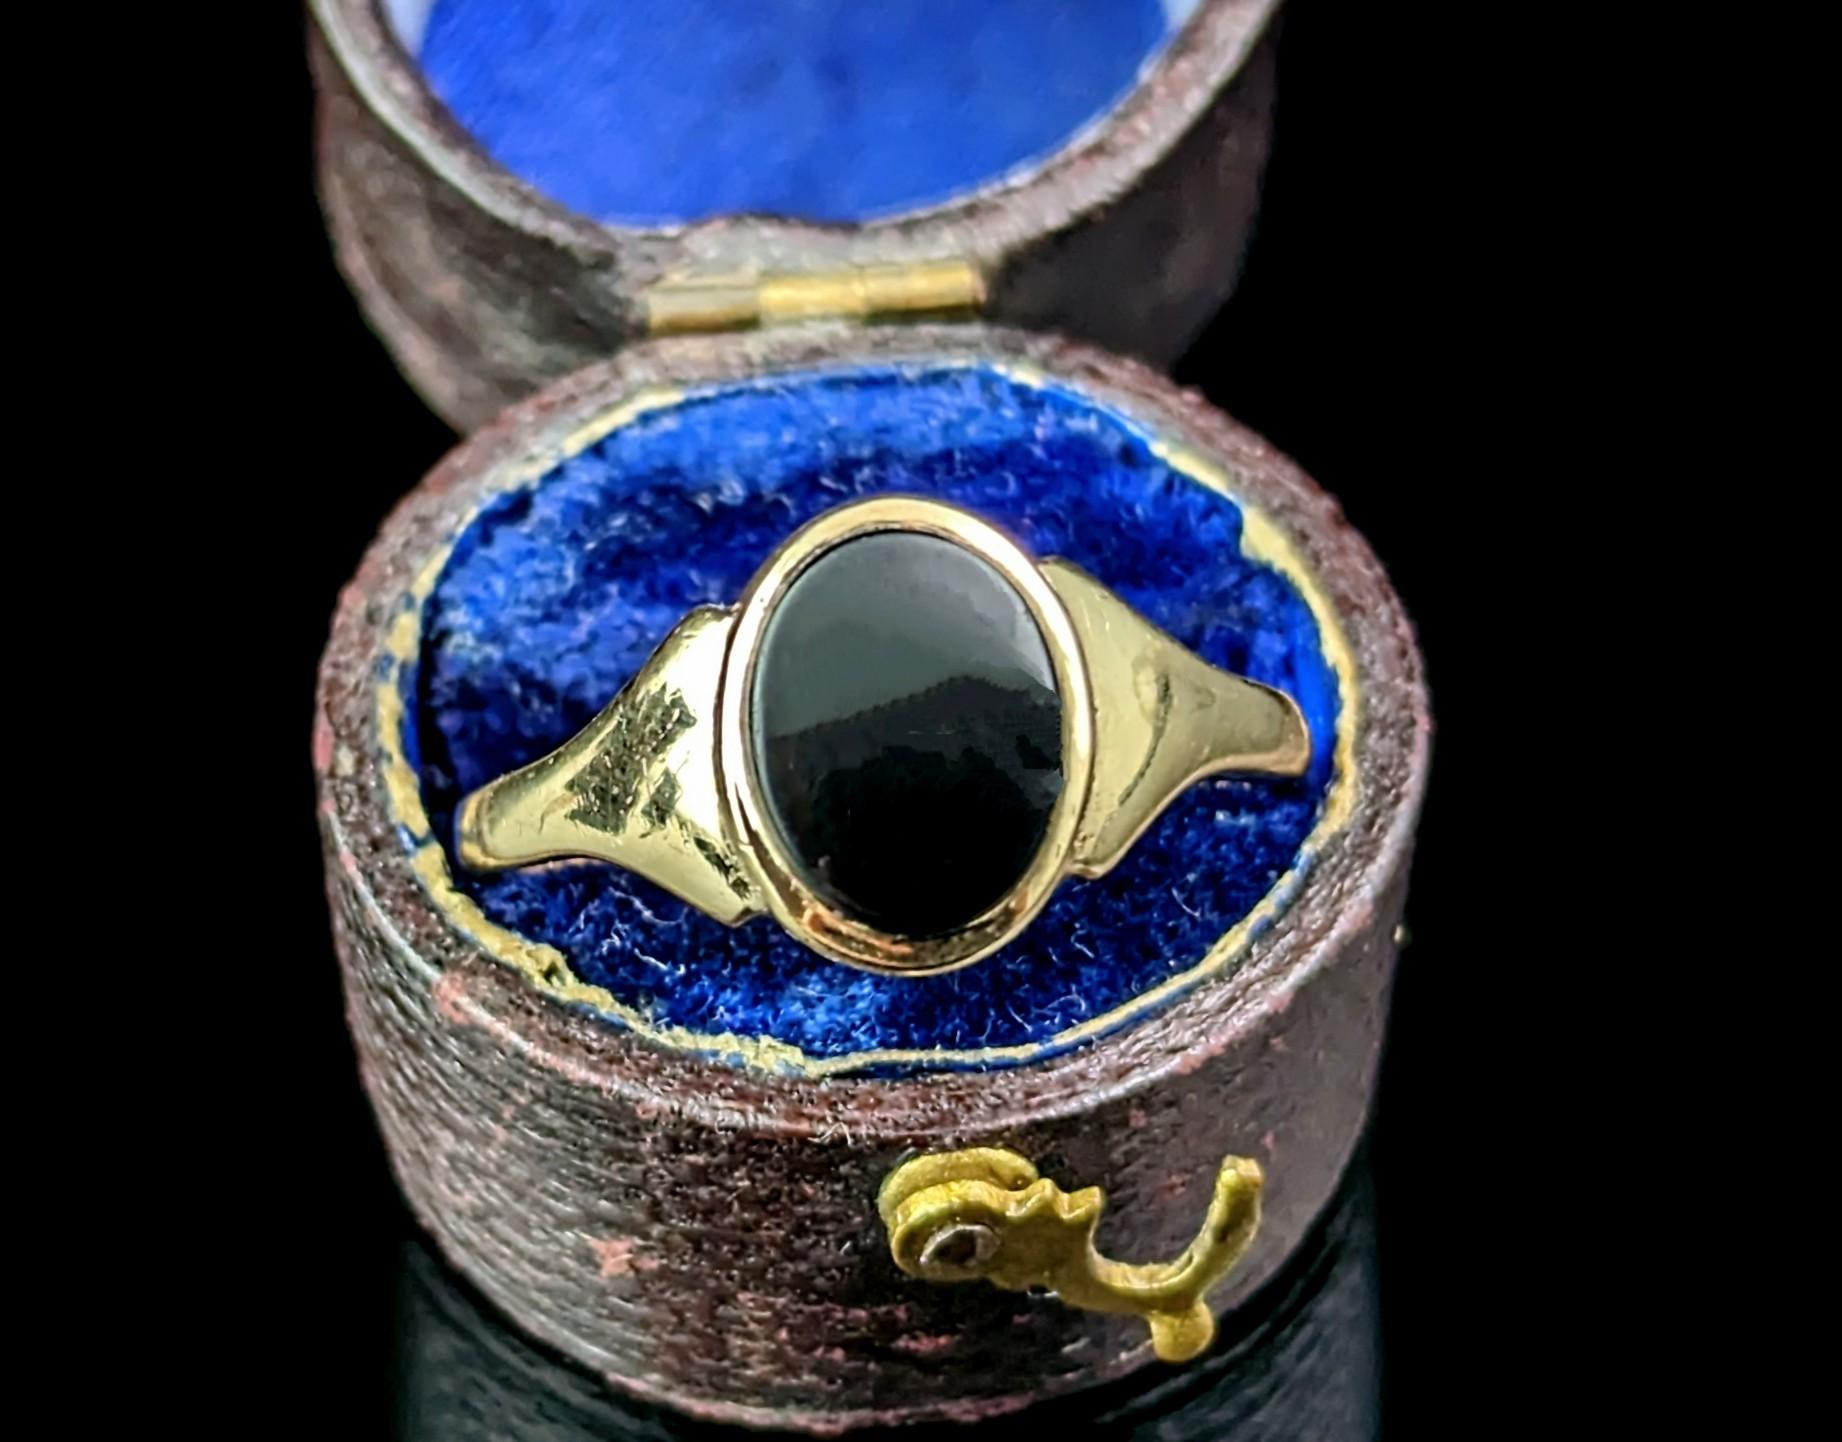 Cette élégante chevalière vintage en or 9ct et onyx noir est le choix idéal pour l'anneau du petit doigt !

La face ovale est sertie d'une pierre d'onyx d'un noir profond, qui n'a pas été sculptée et qui peut donc être personnalisée avec vos